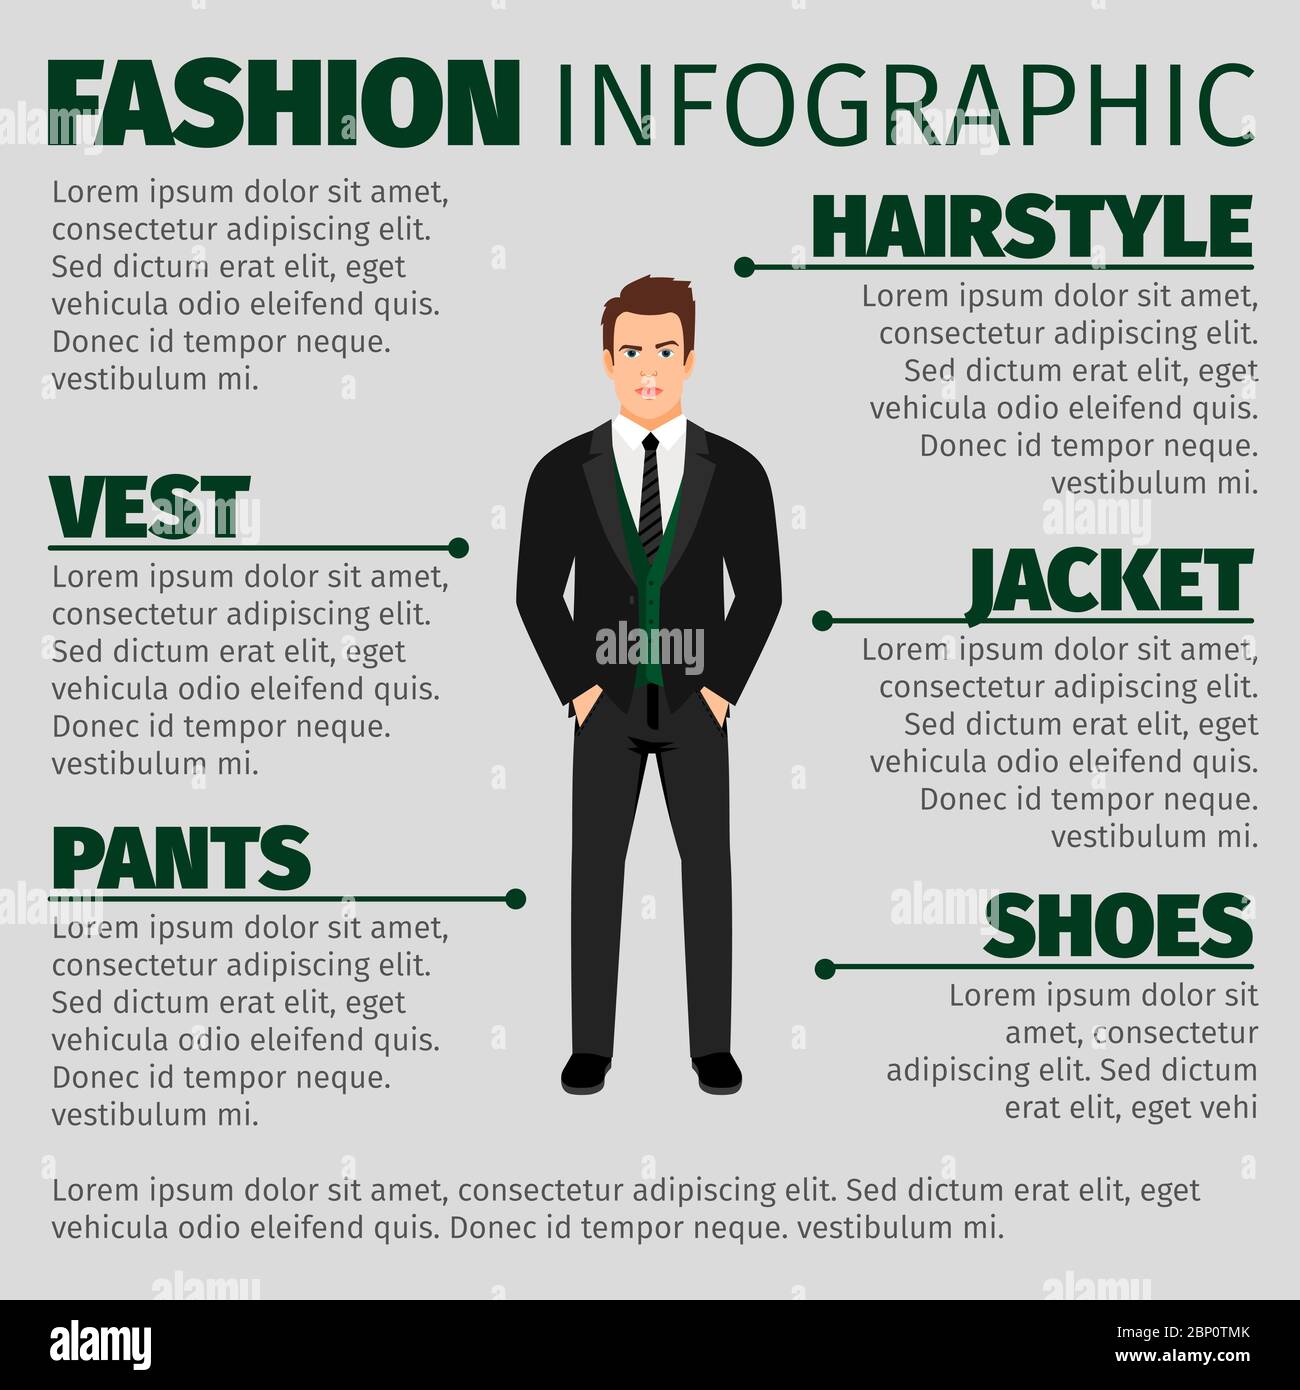 Mode Infografik mit Mann in einem Anzug und grüne Weste. Vektorgrafik Stock Vektor